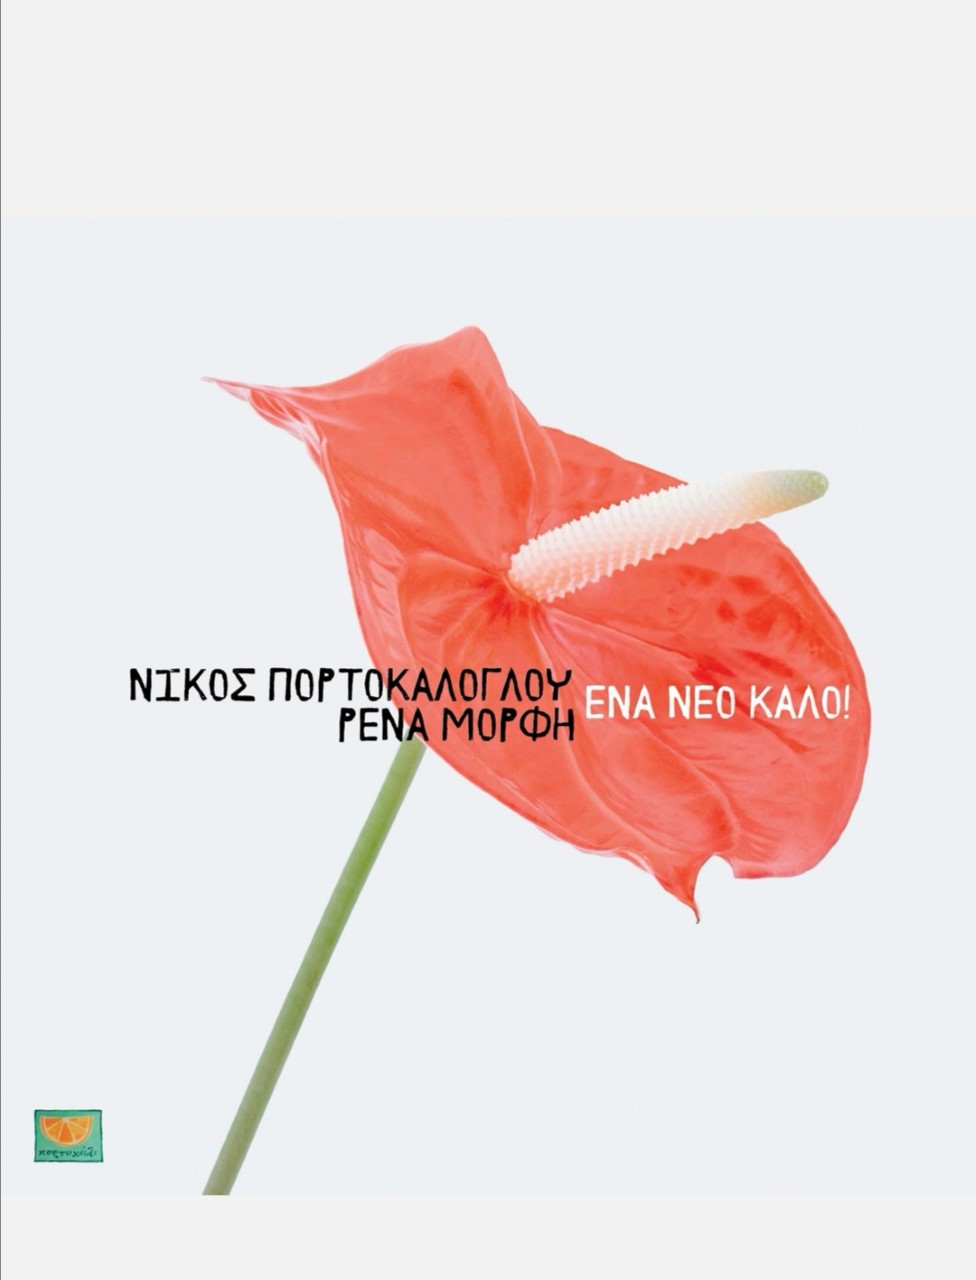 Το νέο τραγούδι του Νίκου Πορτοκάλογλου ακούγεται δυνατά! «Eνα νέο καλό» |  ΠΟΛΙΤΙΣΜΟΣ | iefimerida.gr